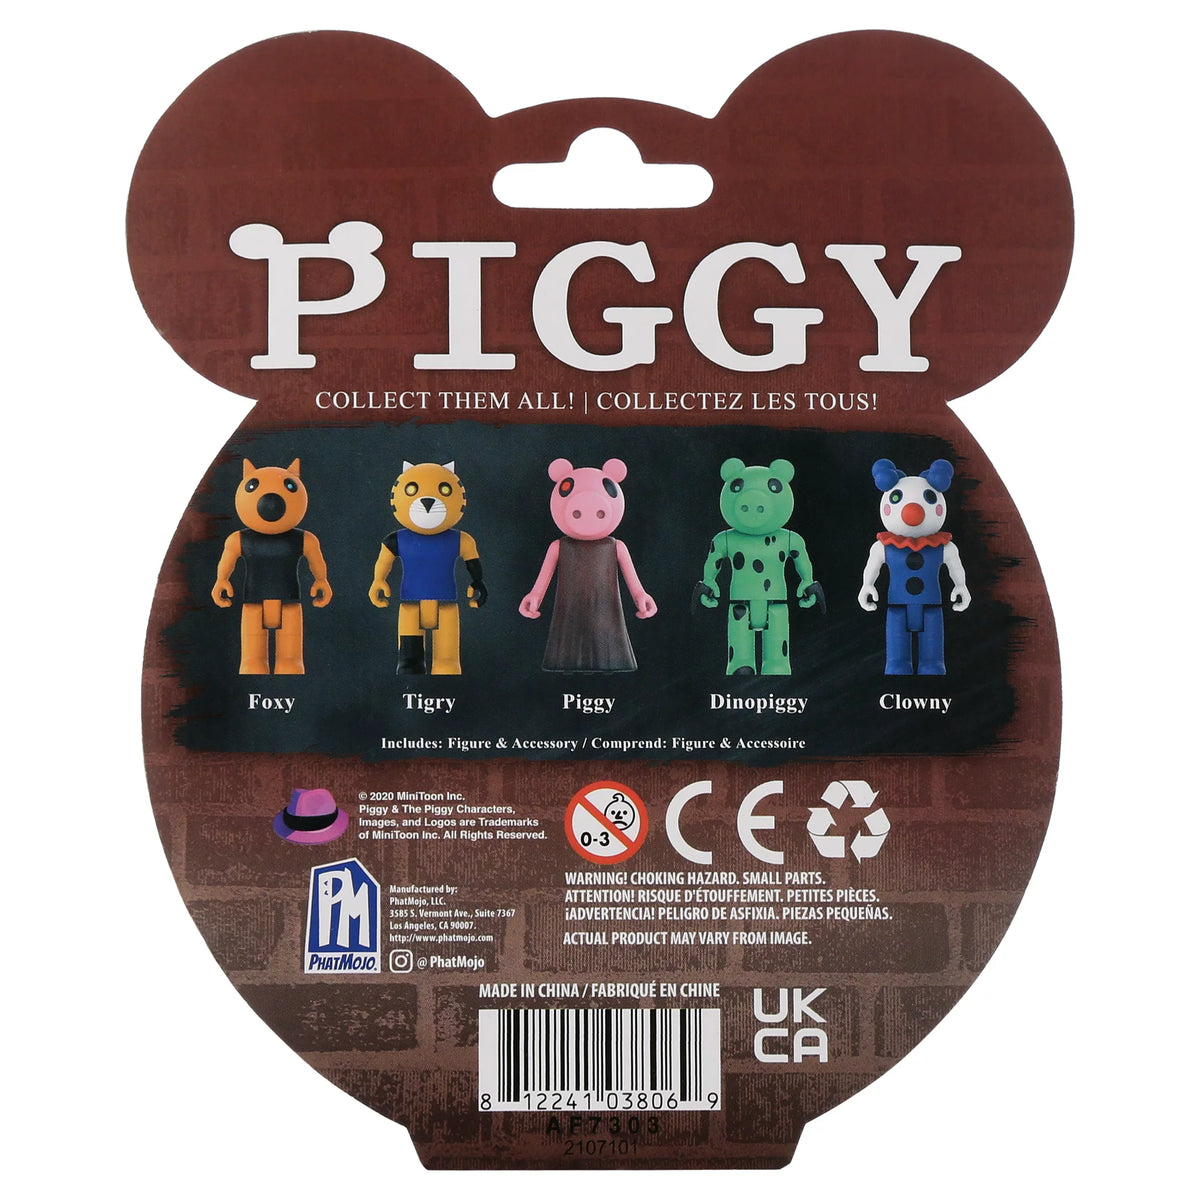 Rare Roblox Piggy Series 3 Mini Figure Glow in the Dark Zompiggy DLC New